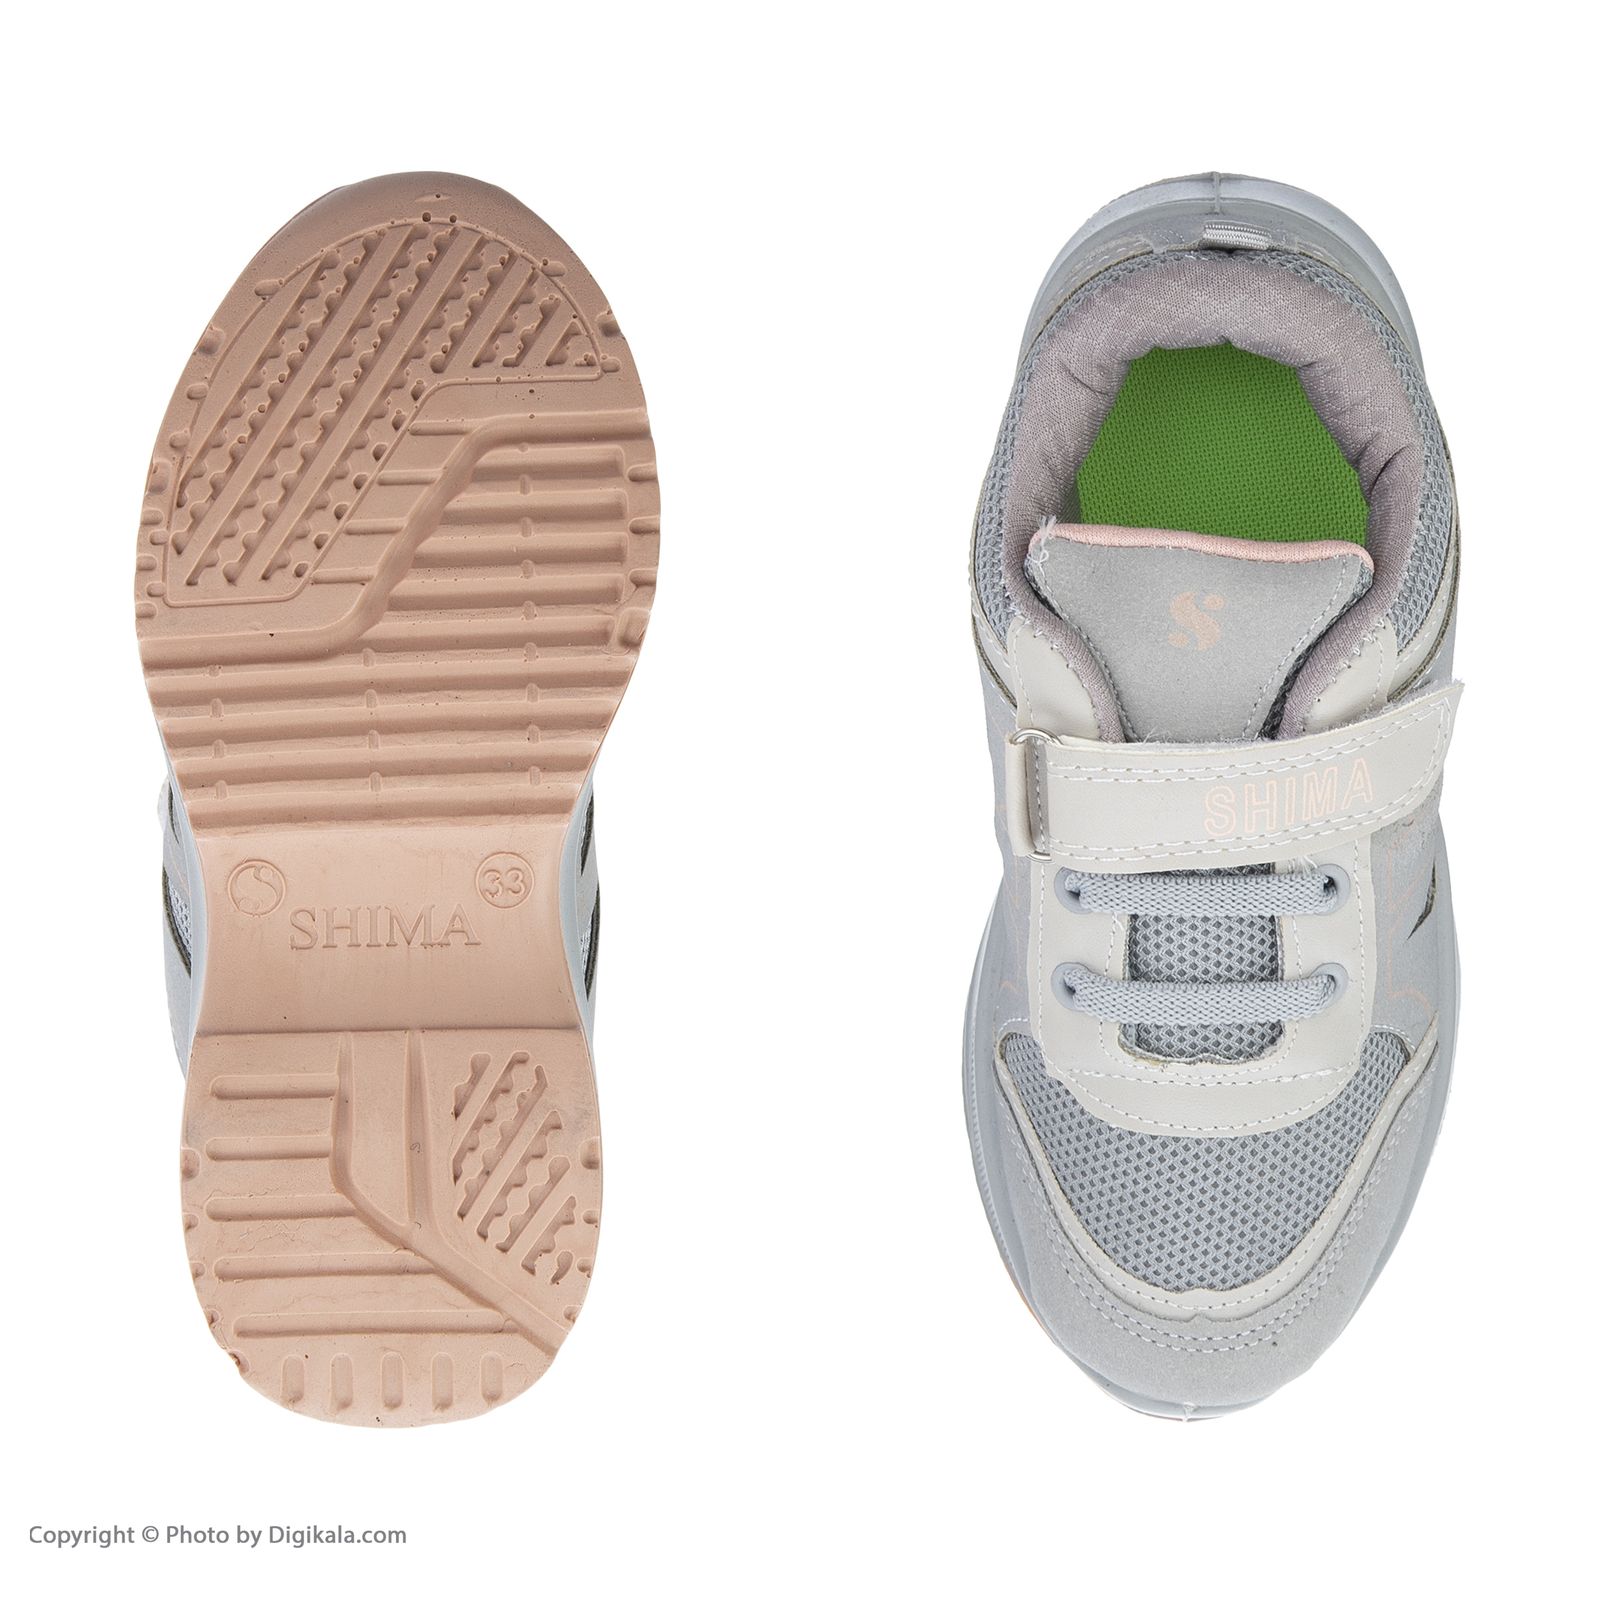 کفش راحتی بچگانه شیما مدل 4300280933-09 -  - 3